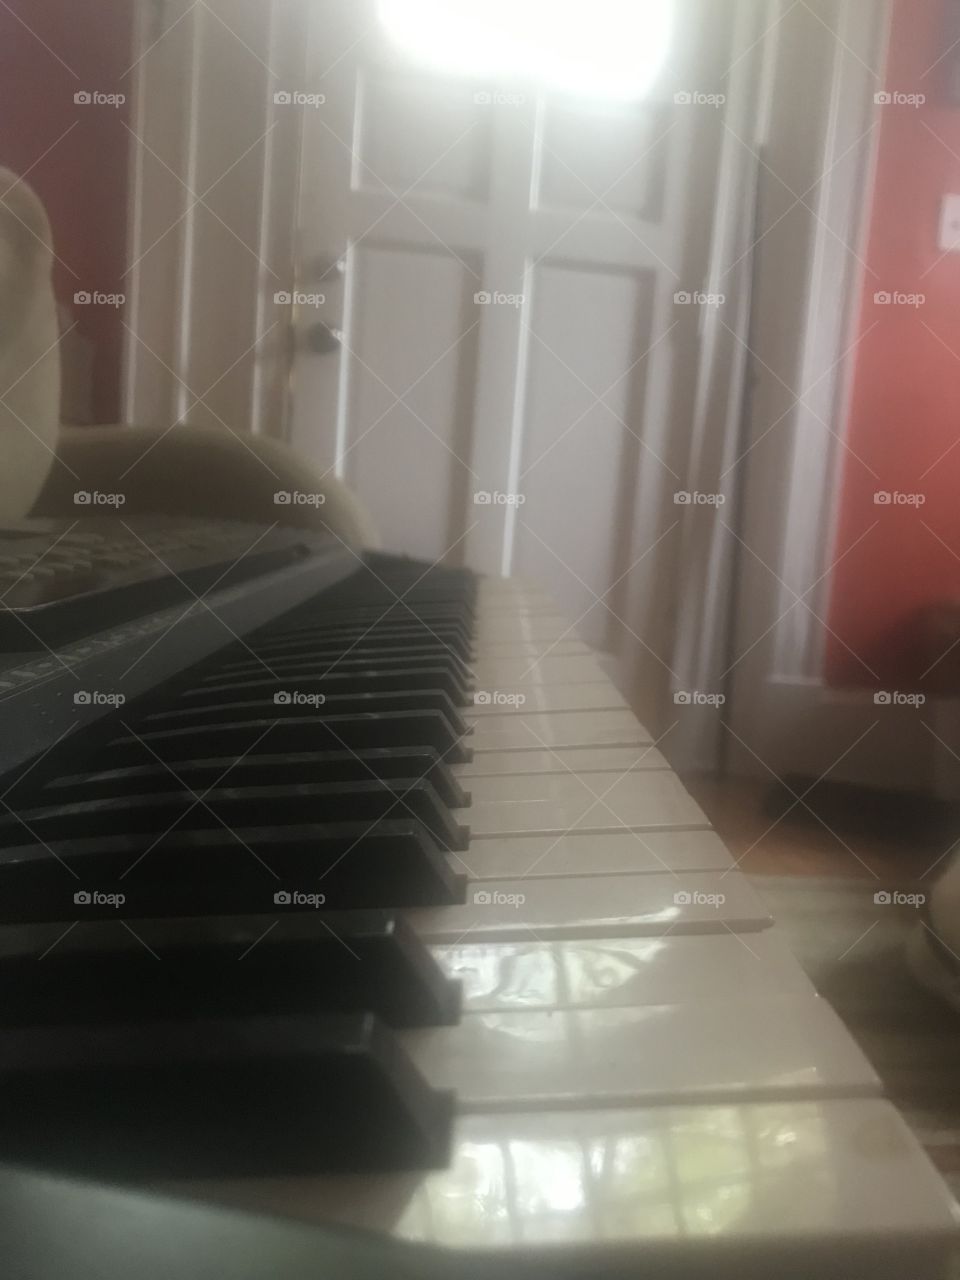 Piano at odd angle